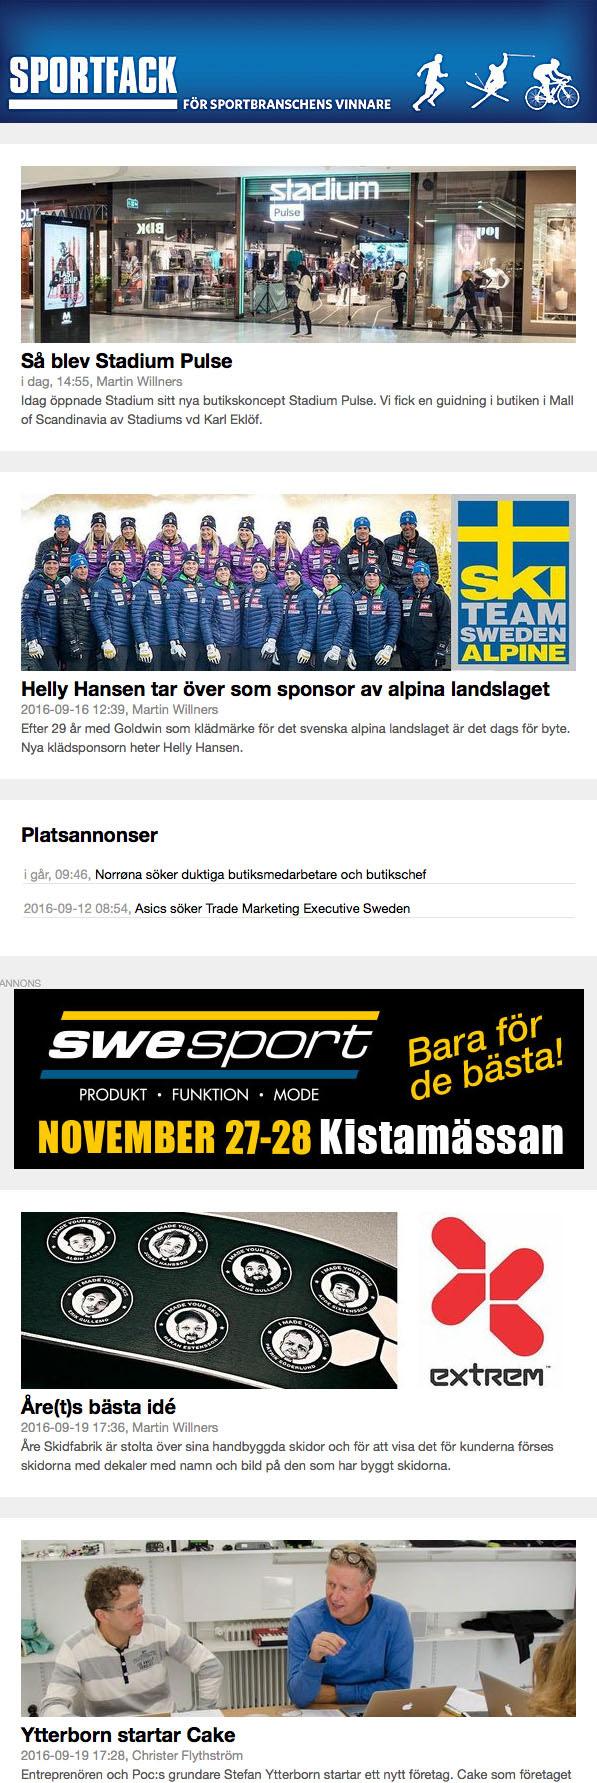 www.sportfack.se WEBB 2018 Sveriges största affärssajt för sport- cykel- och golfbranschen. BESÖKARNA Sportfack.